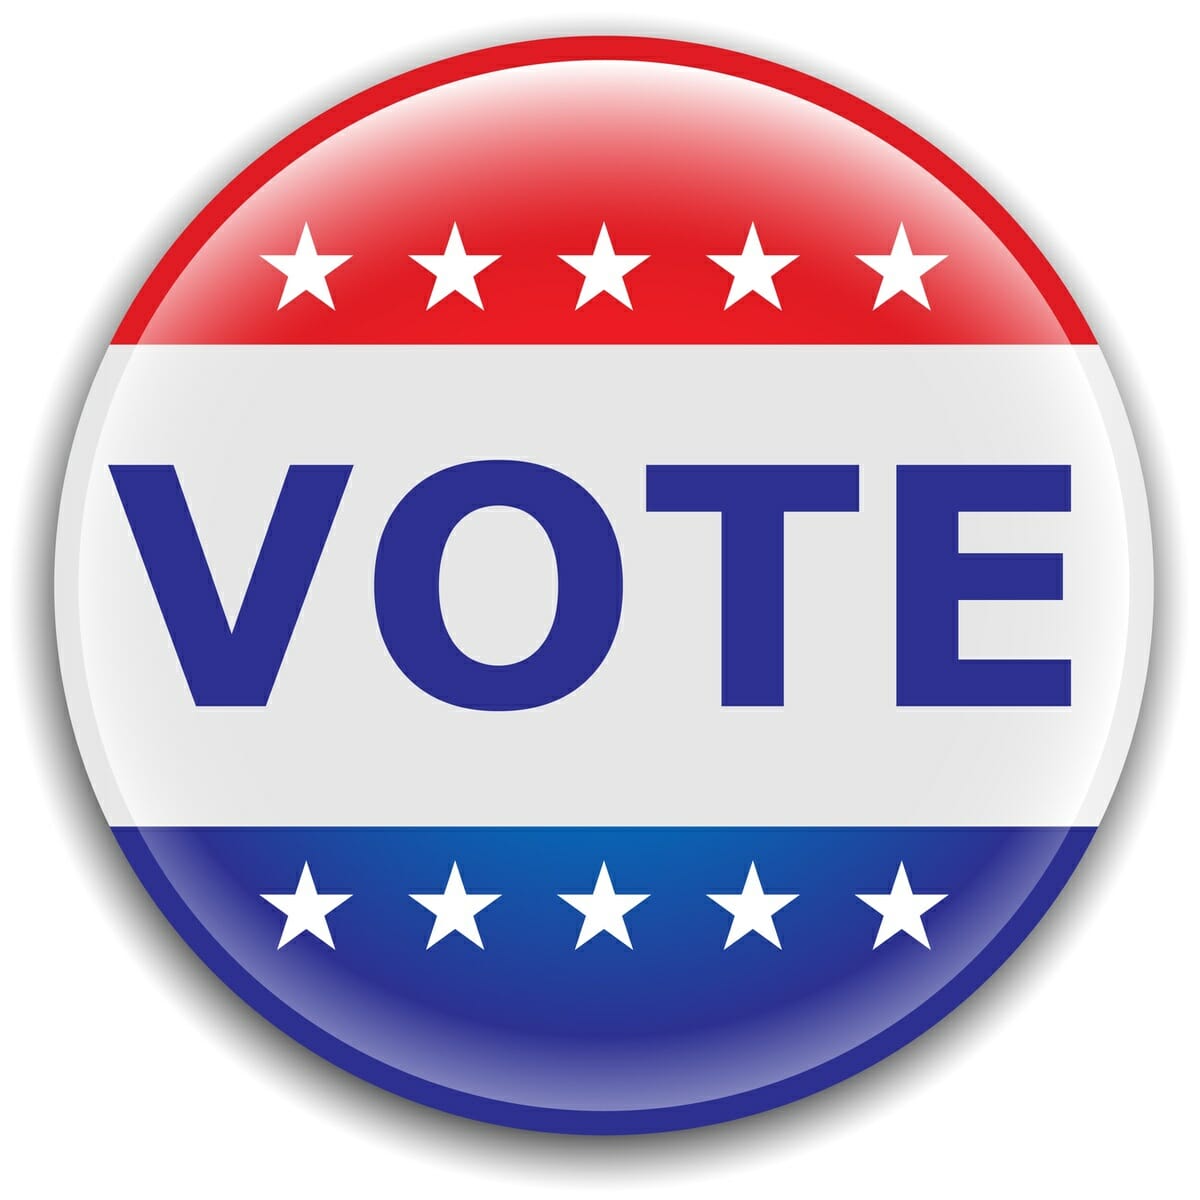 vote button clipart - photo #23